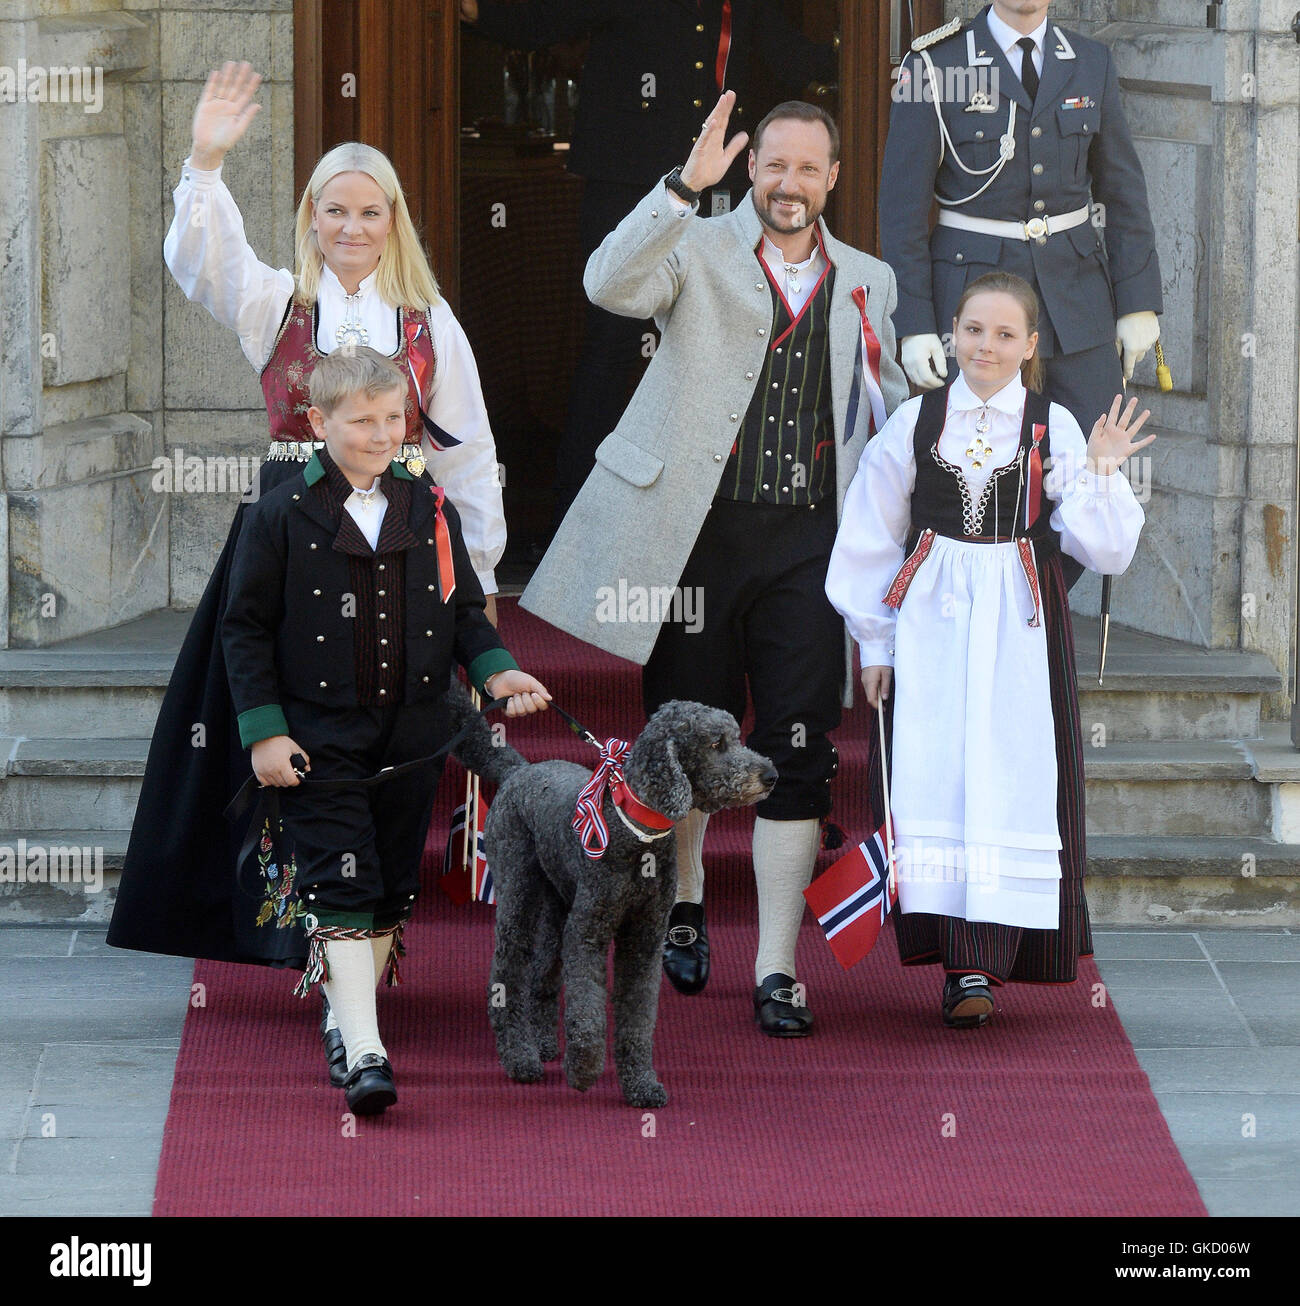 Los Royals Celebran Día Nacional de Noruega en la residencia Real de Noruega en Oslo Skaugum Featuring: Crown Princess Mette- Marit, el Príncipe Heredero Haakon, la Princesa Ingrid Alexandra, el Príncipe Sverre Magnus Dónde: Oslo, Noruega cuando: 17 de mayo de 2016 Foto de stock